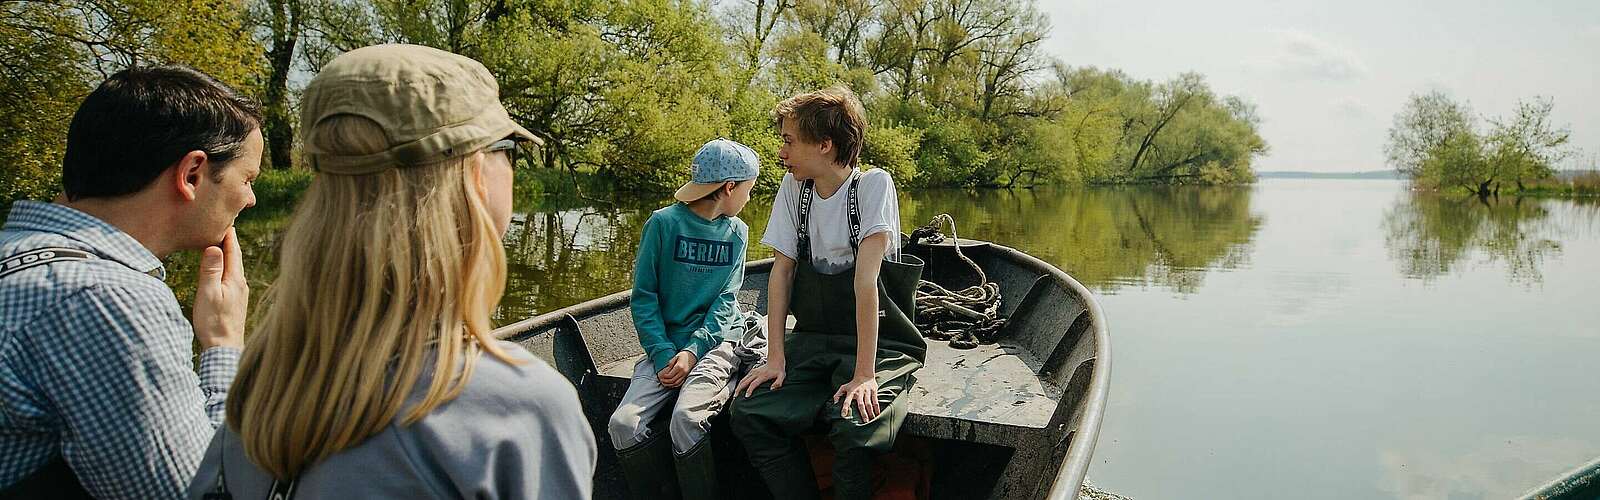 Mit dem Boot auf dem Gülper See,
        
    

        Foto: Fotograf / Lizenz - Media Import/Julia Nimke